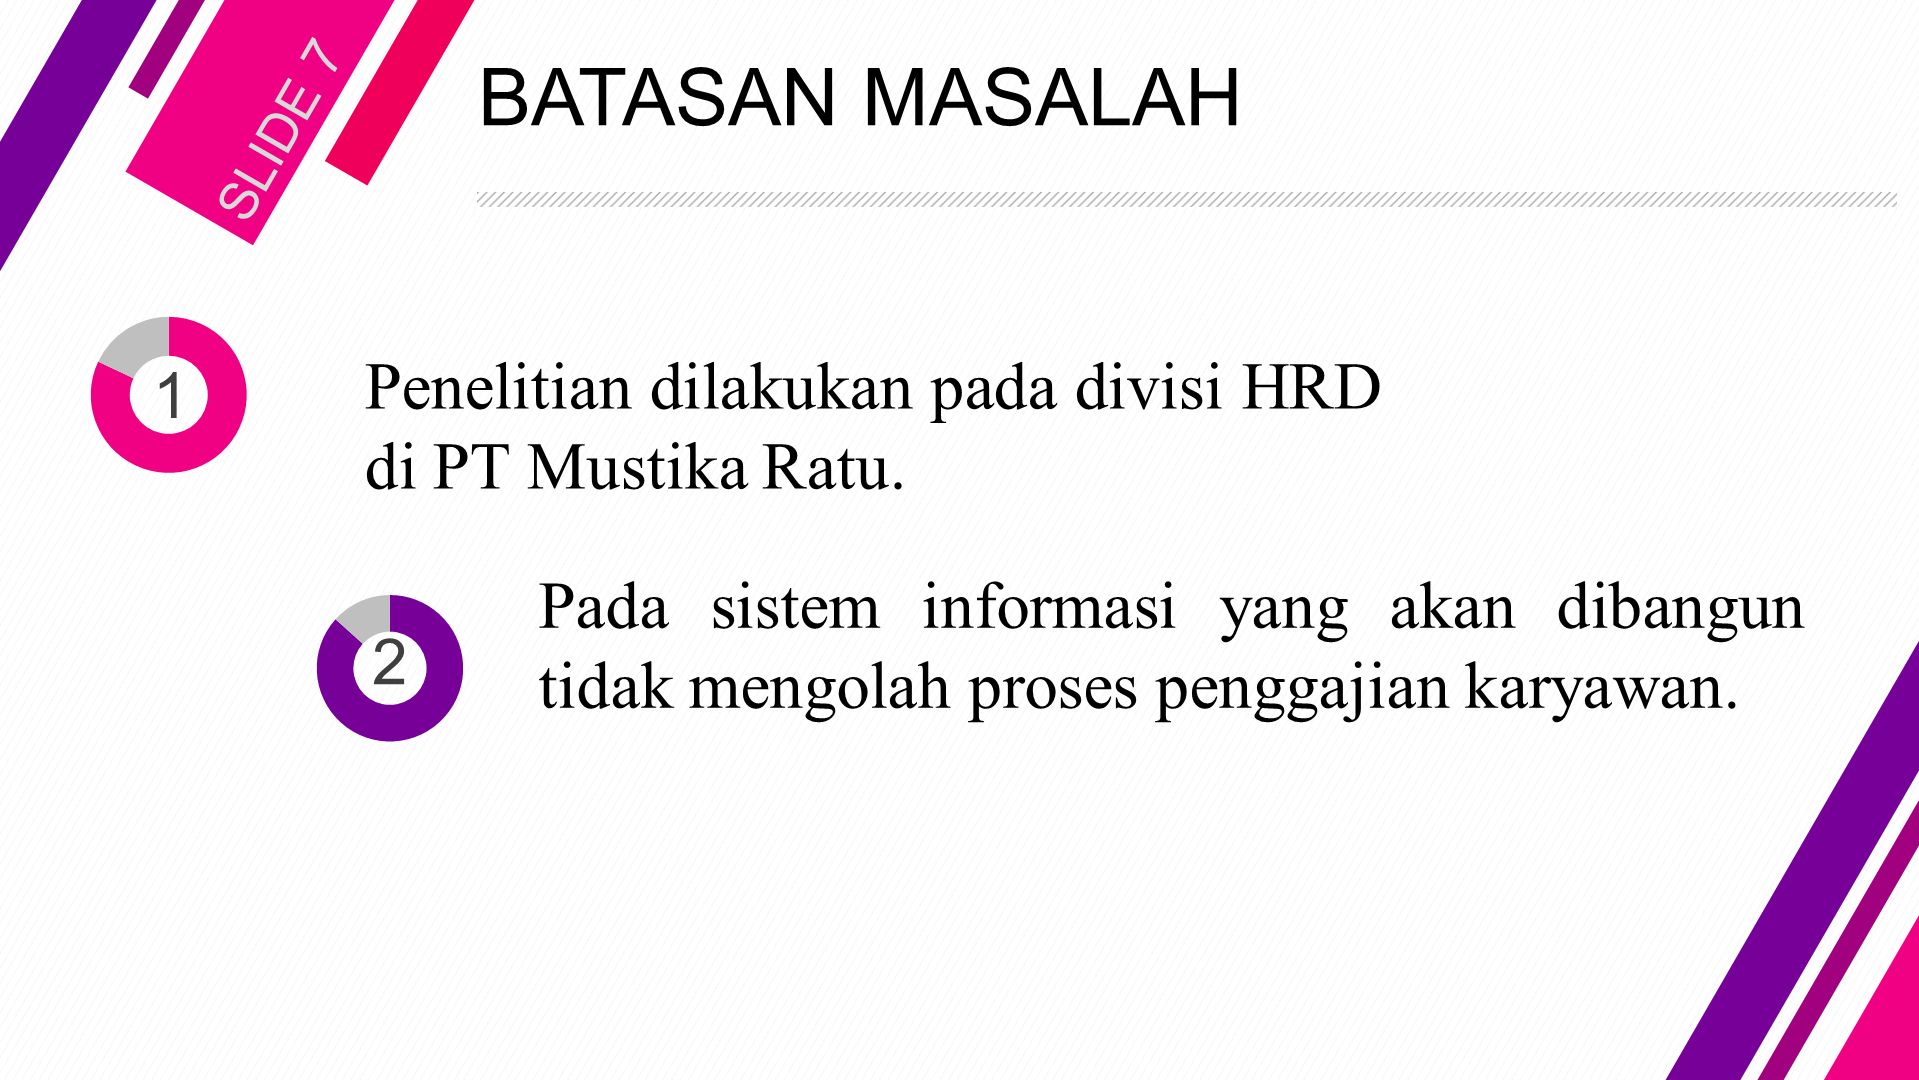 BATASAN MASALAH SLIDE 7 Penelitian dilakukan pada divisi HRD di PT Mustika Ratu.